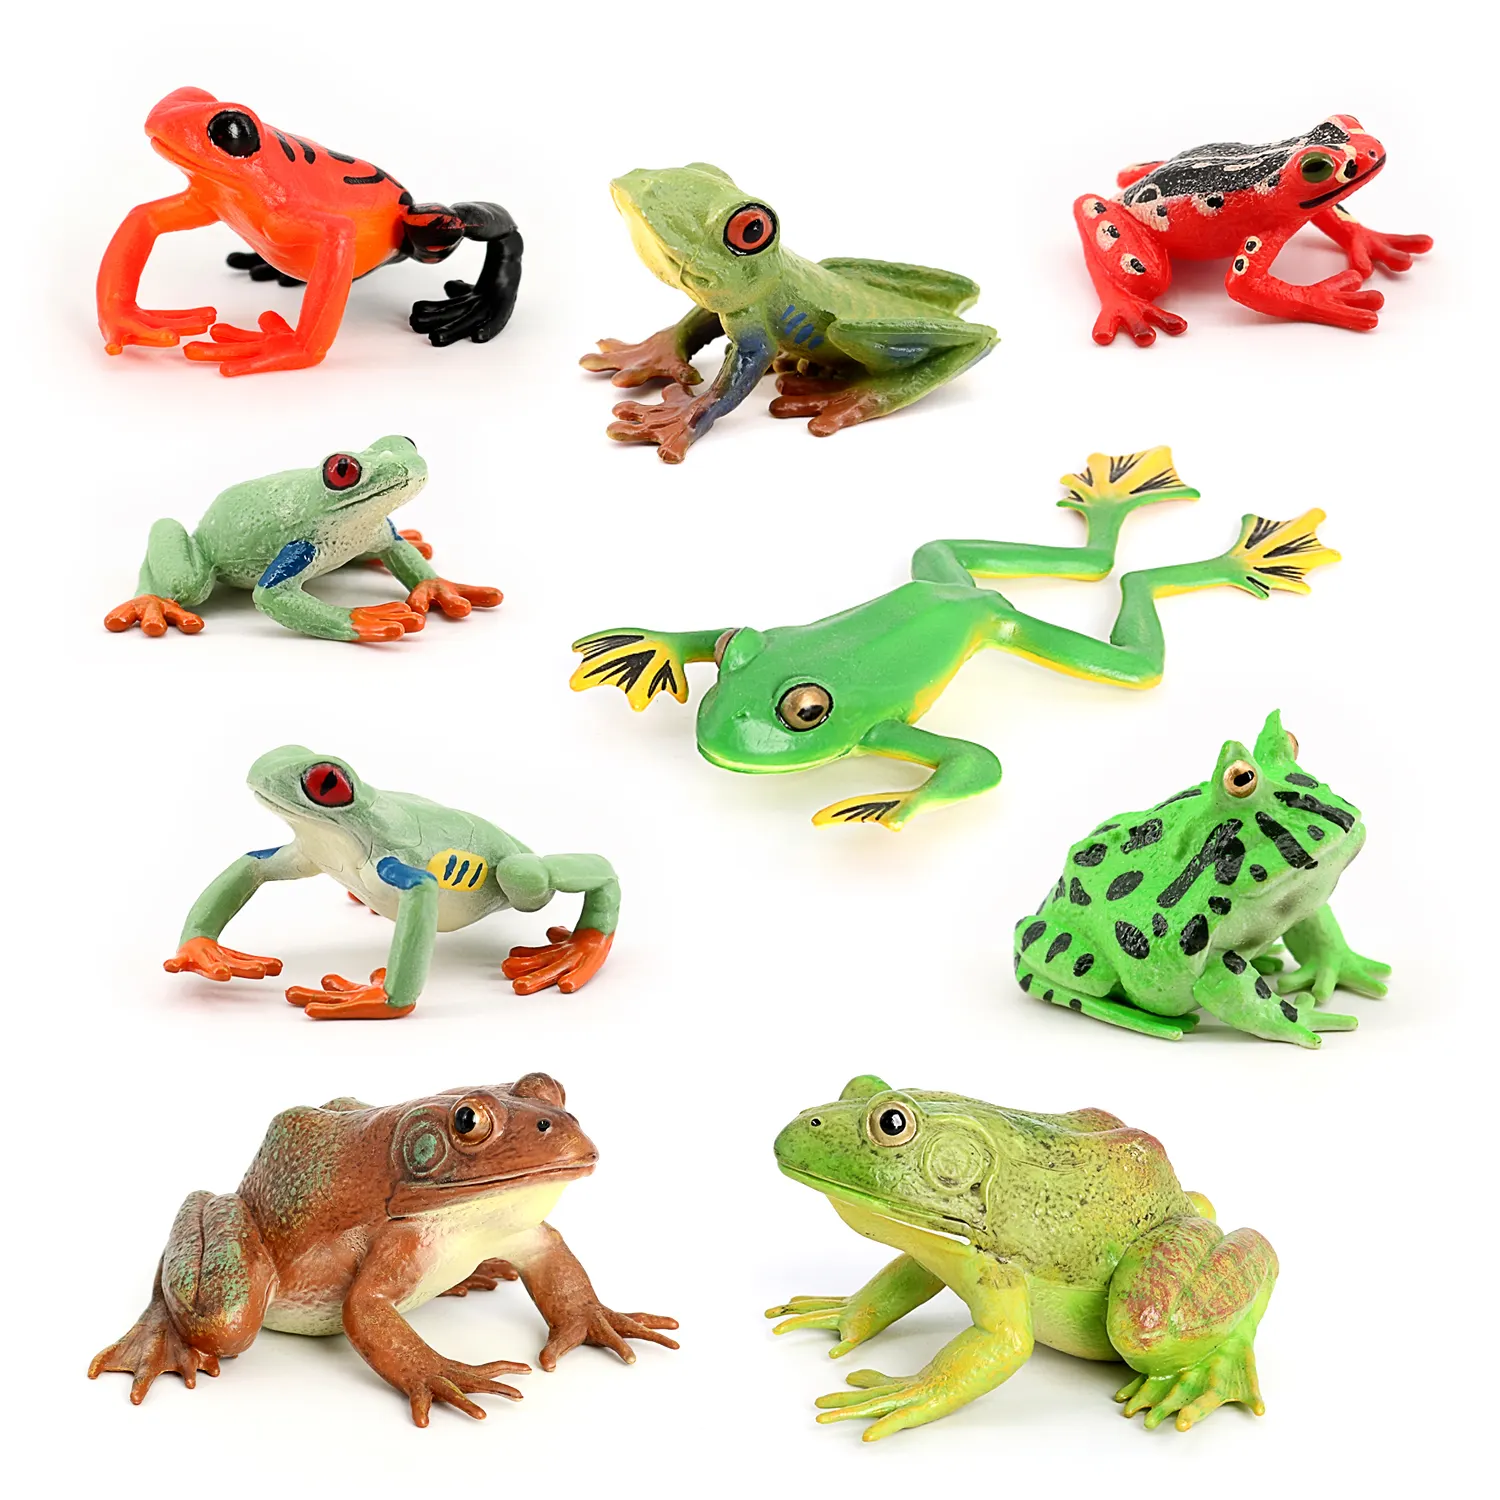 Оптовая продажа, твердая ПВХ статуэтка, модель, фигурки животных, игрушки, фигурки лягушек, животных